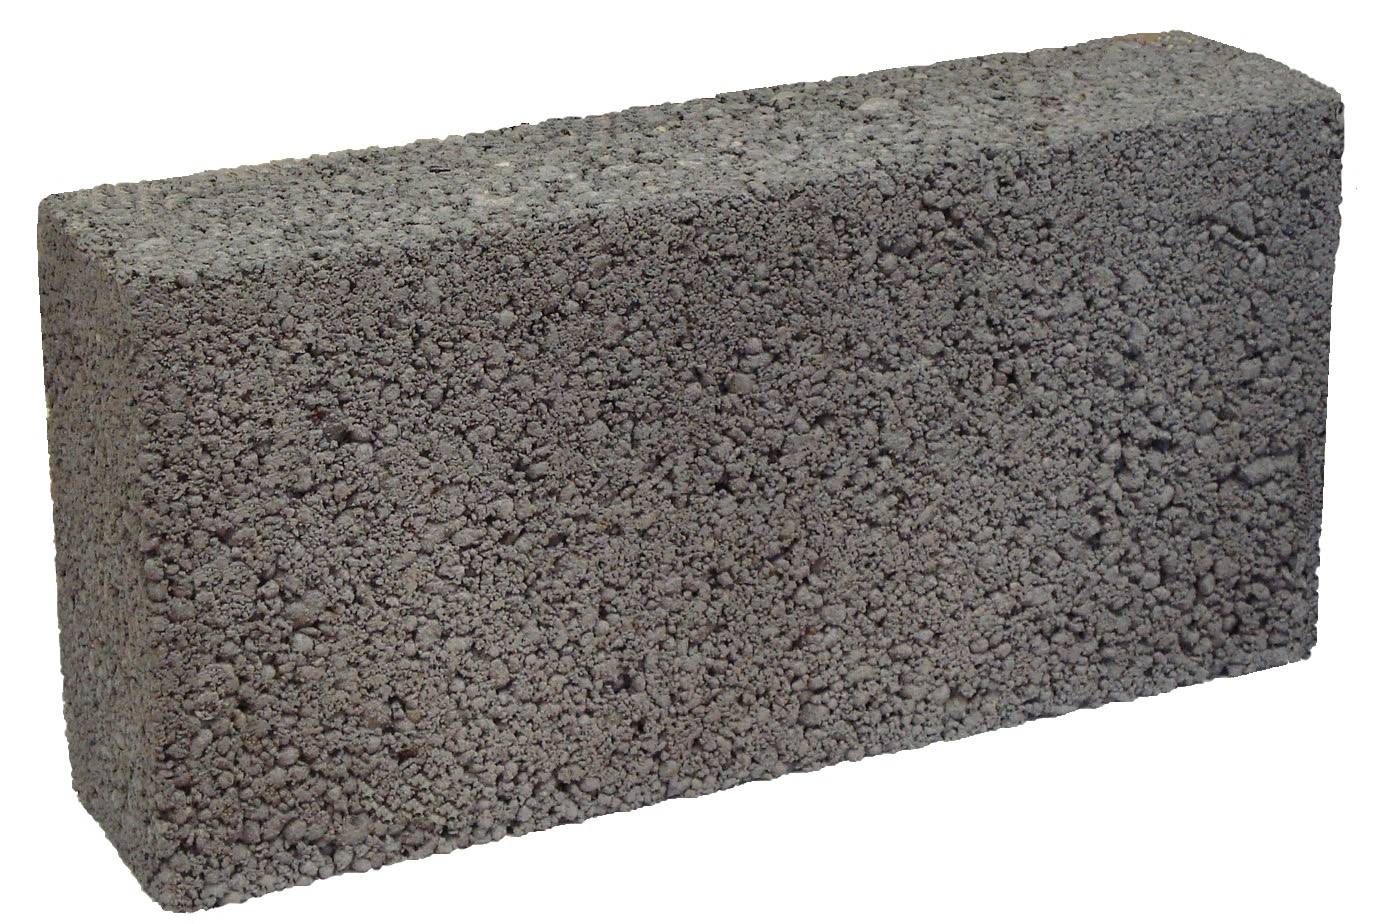 Ultralite Concrete Block